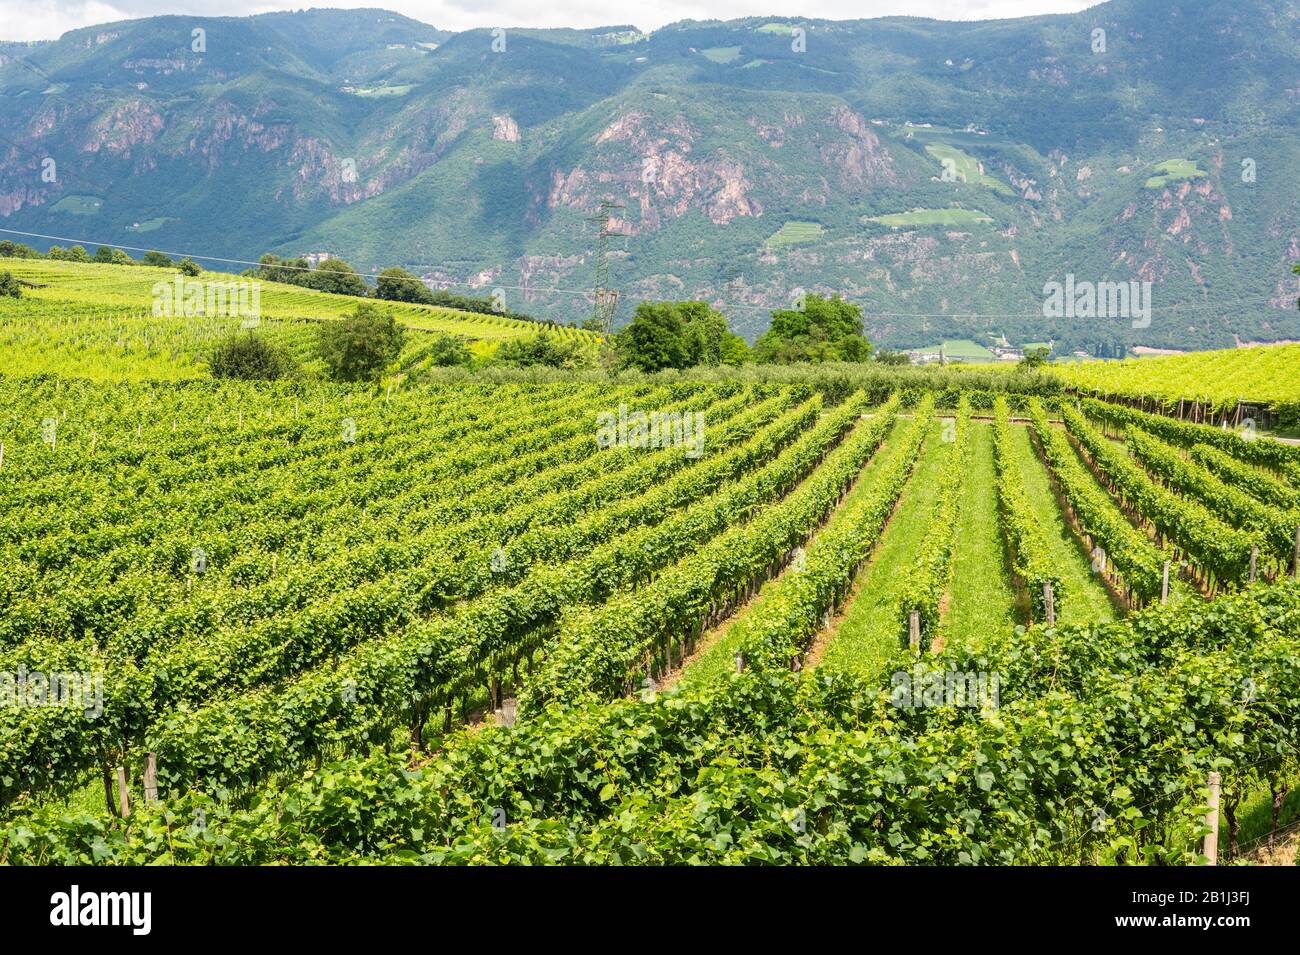 Vineyard in Girlan village of South Tirol, Italy. Stock Photo